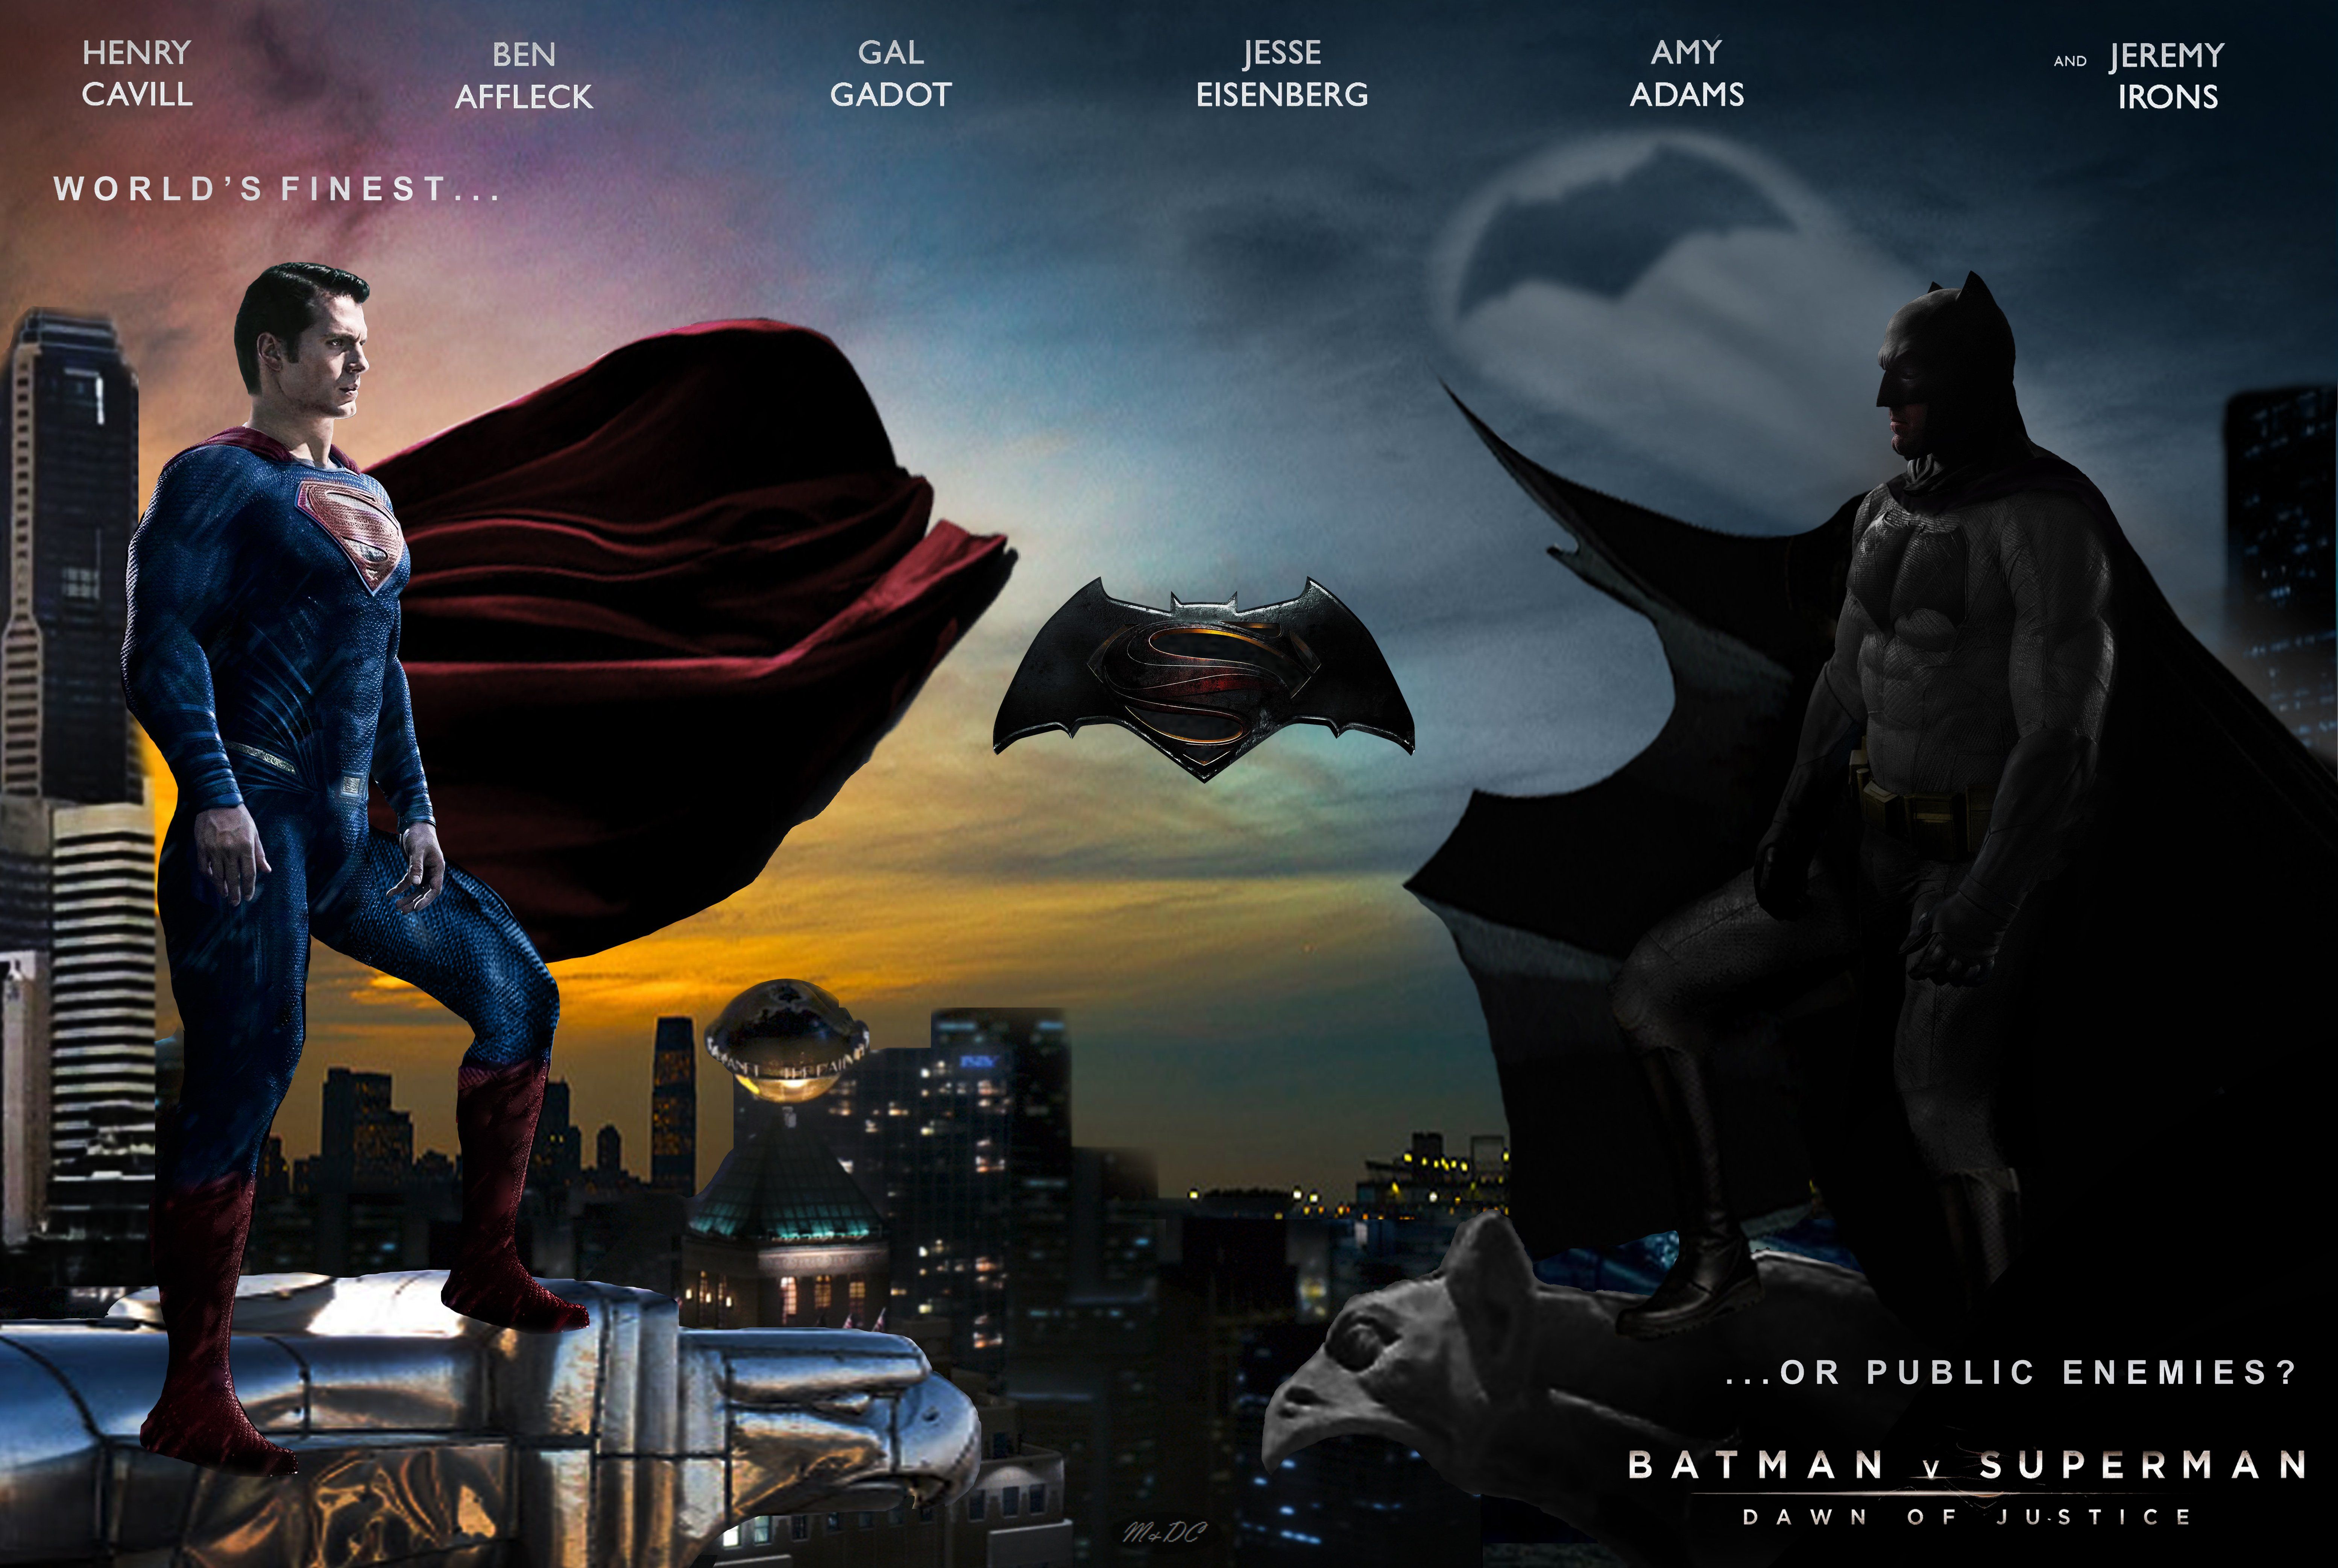 Batman Vs Superman wallpaper | 2560x1440 | 404529 | WallpaperUP